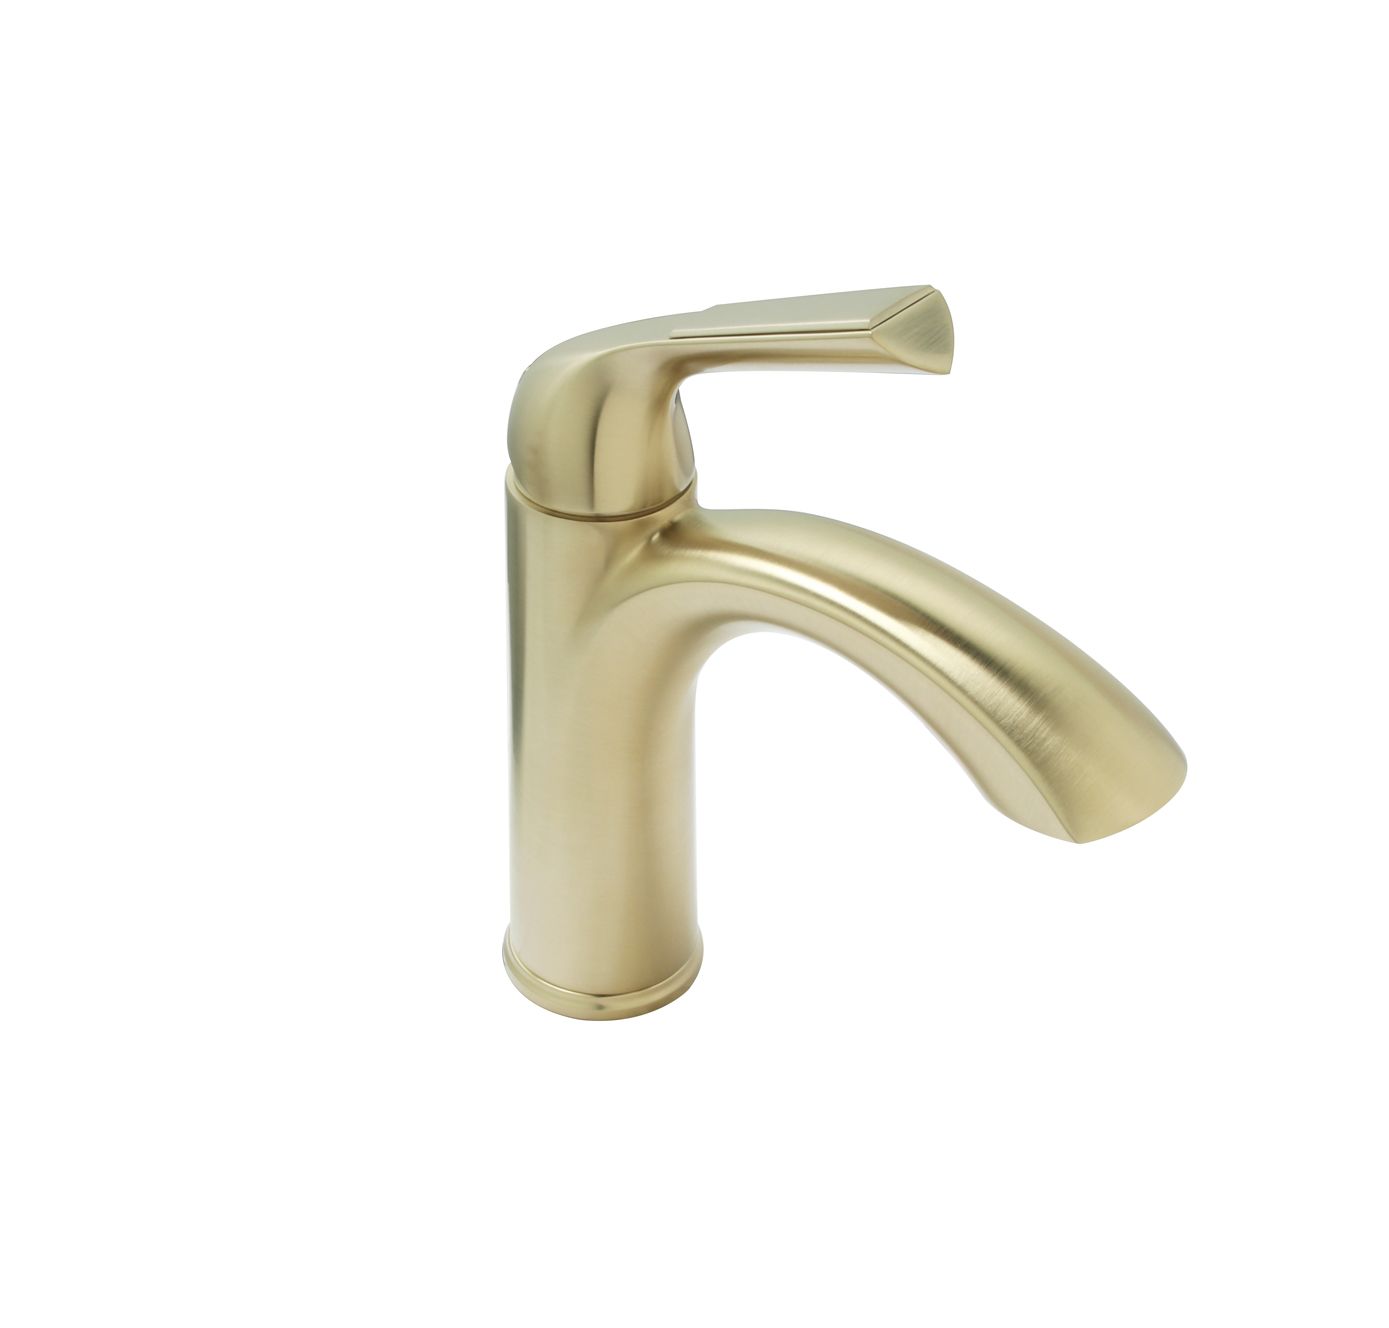 Huntington Brass Joy PVD Satin Brass Single Control Lavatory Faucet With Brass Style Pop-Up Drain Assembly